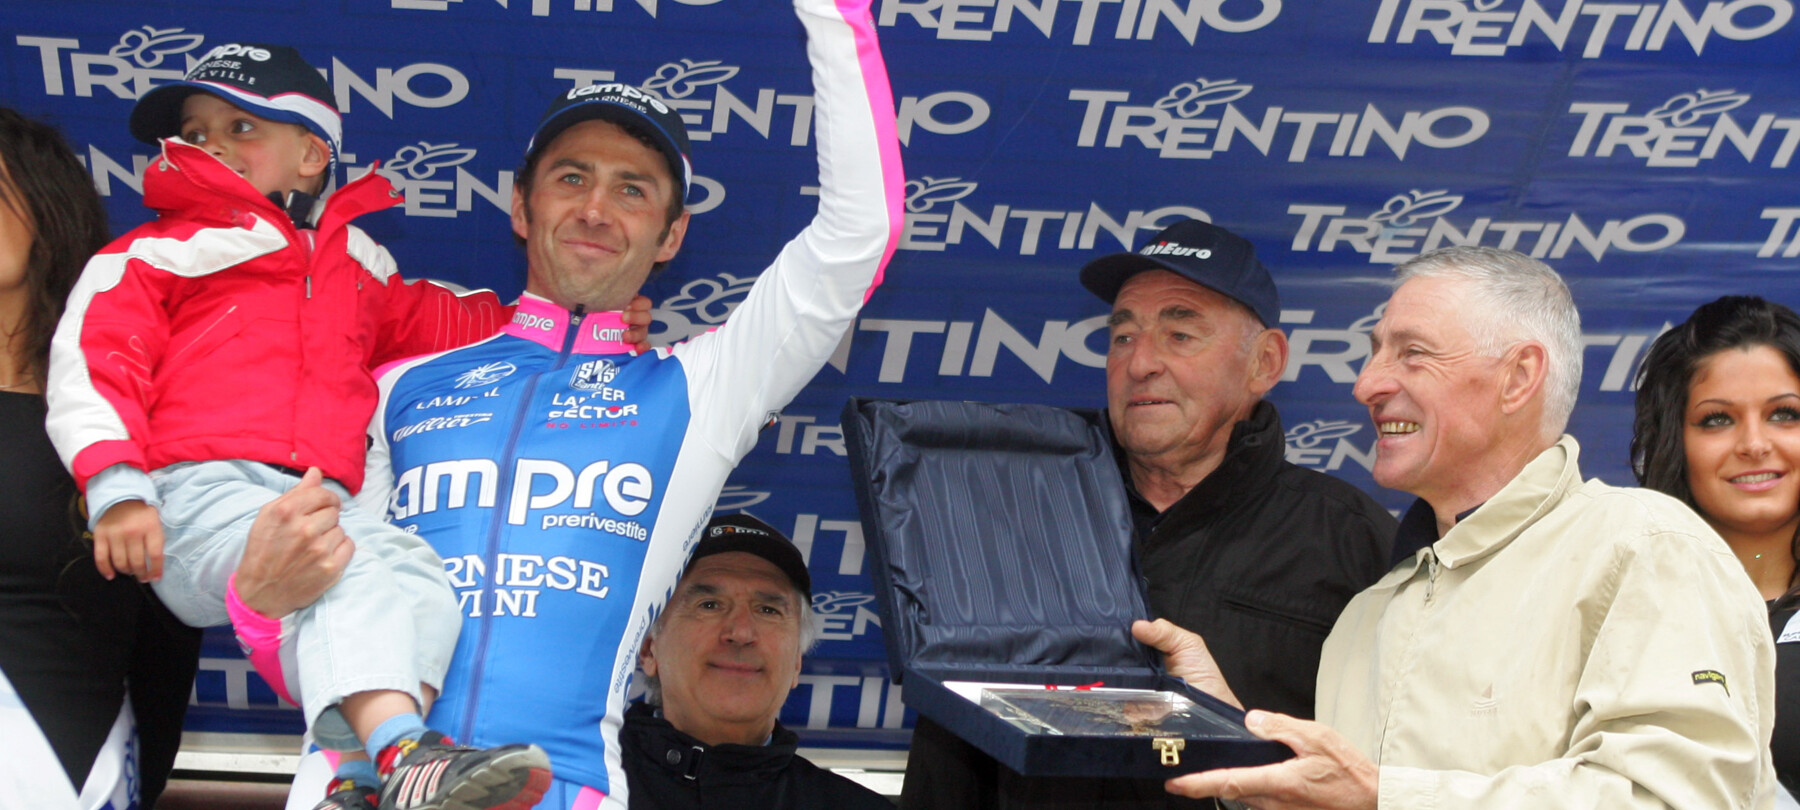 Trentino: země cyklistických šampionů